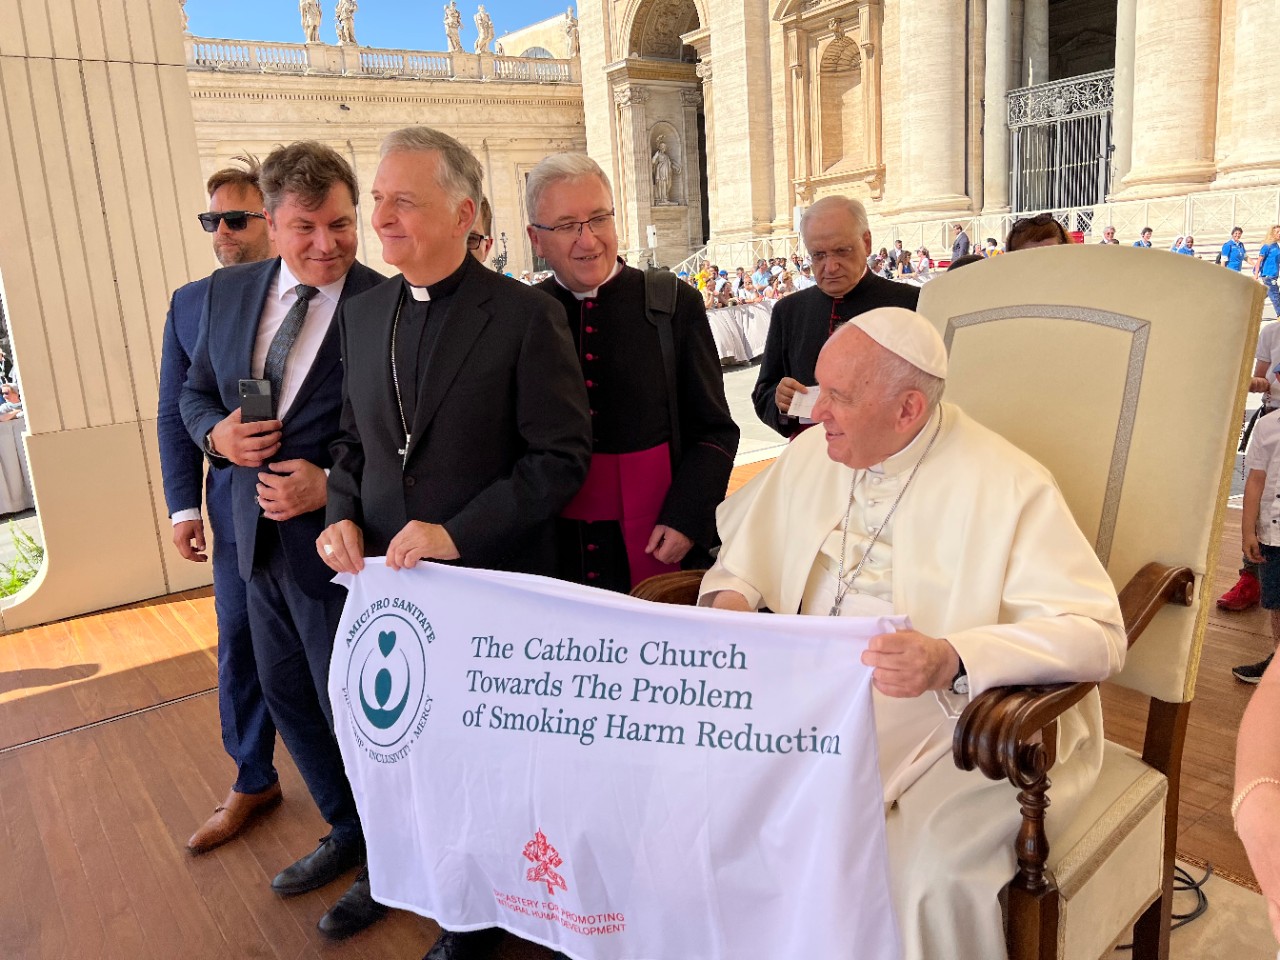 "La Chiesa Cattolica di fronte alla questione della riduzione dei danni del fumo"